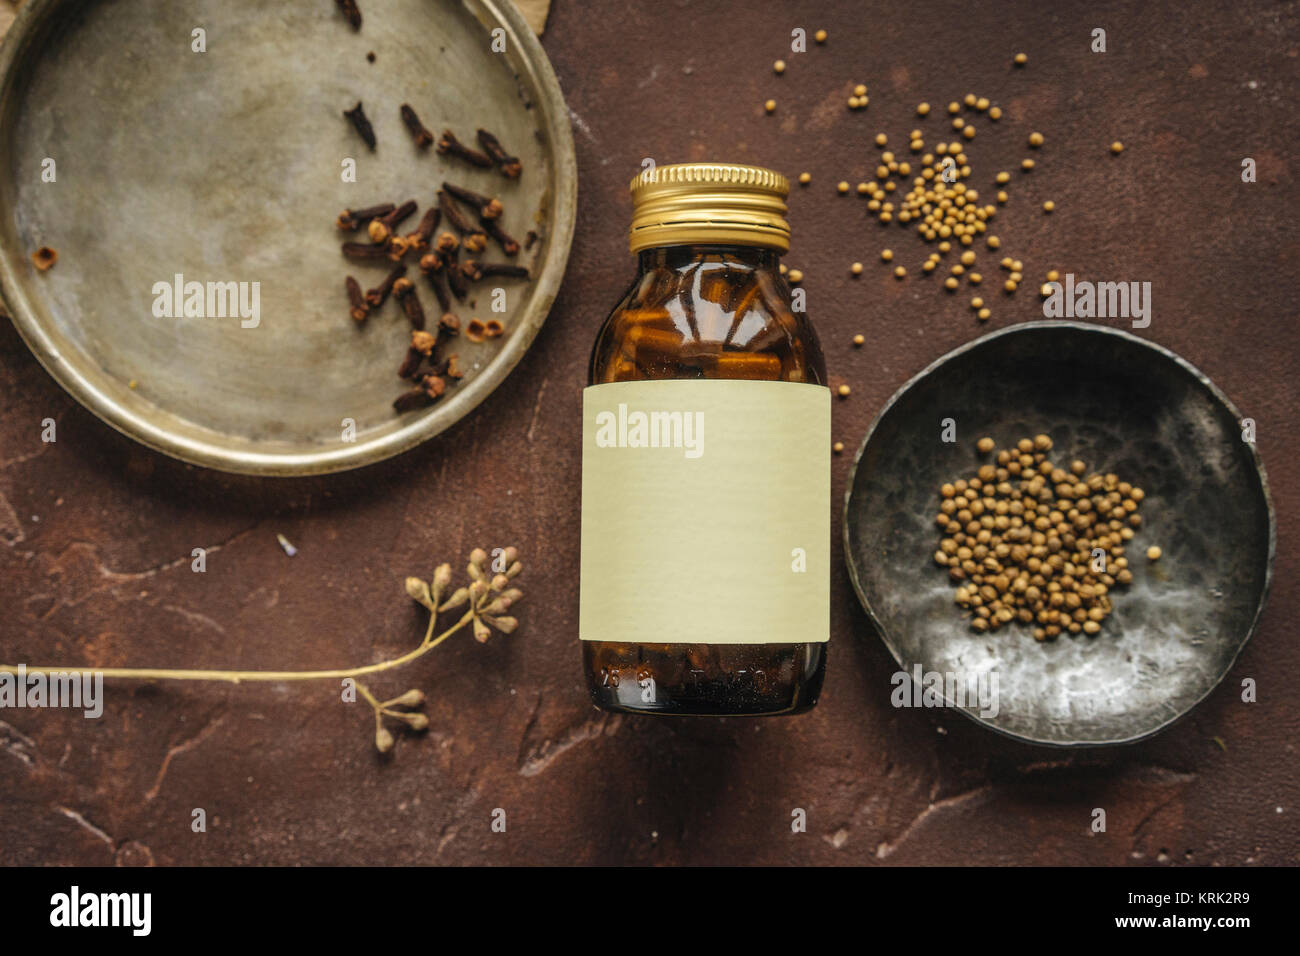 Alternative medicine jar avec étiquette vierge près de graines Banque D'Images